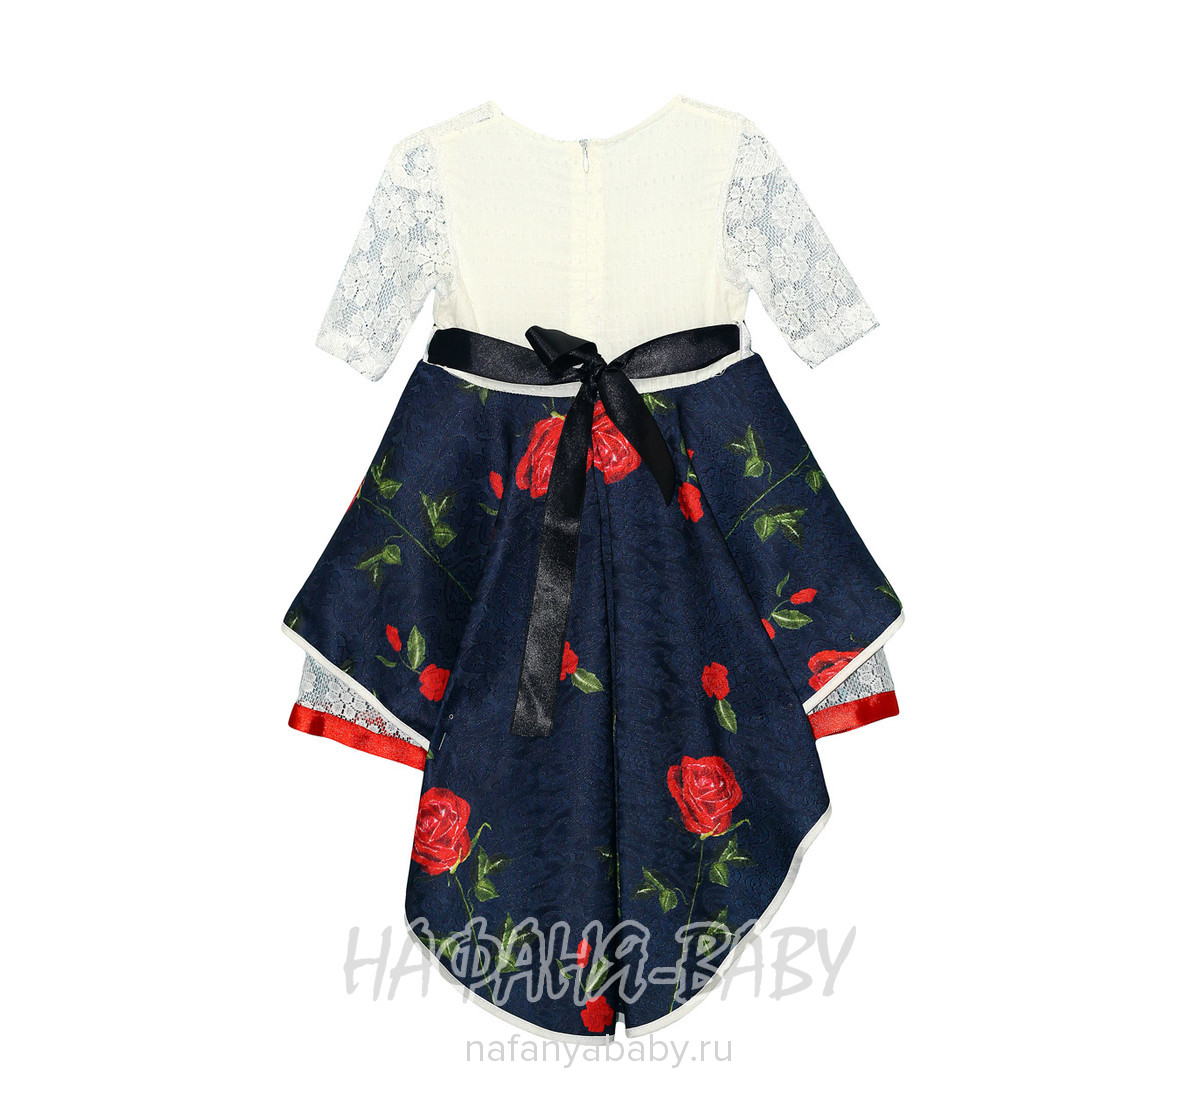 Детское нарядное платье Miss GOLDEN, купить в интернет магазине Нафаня. арт: 2116.